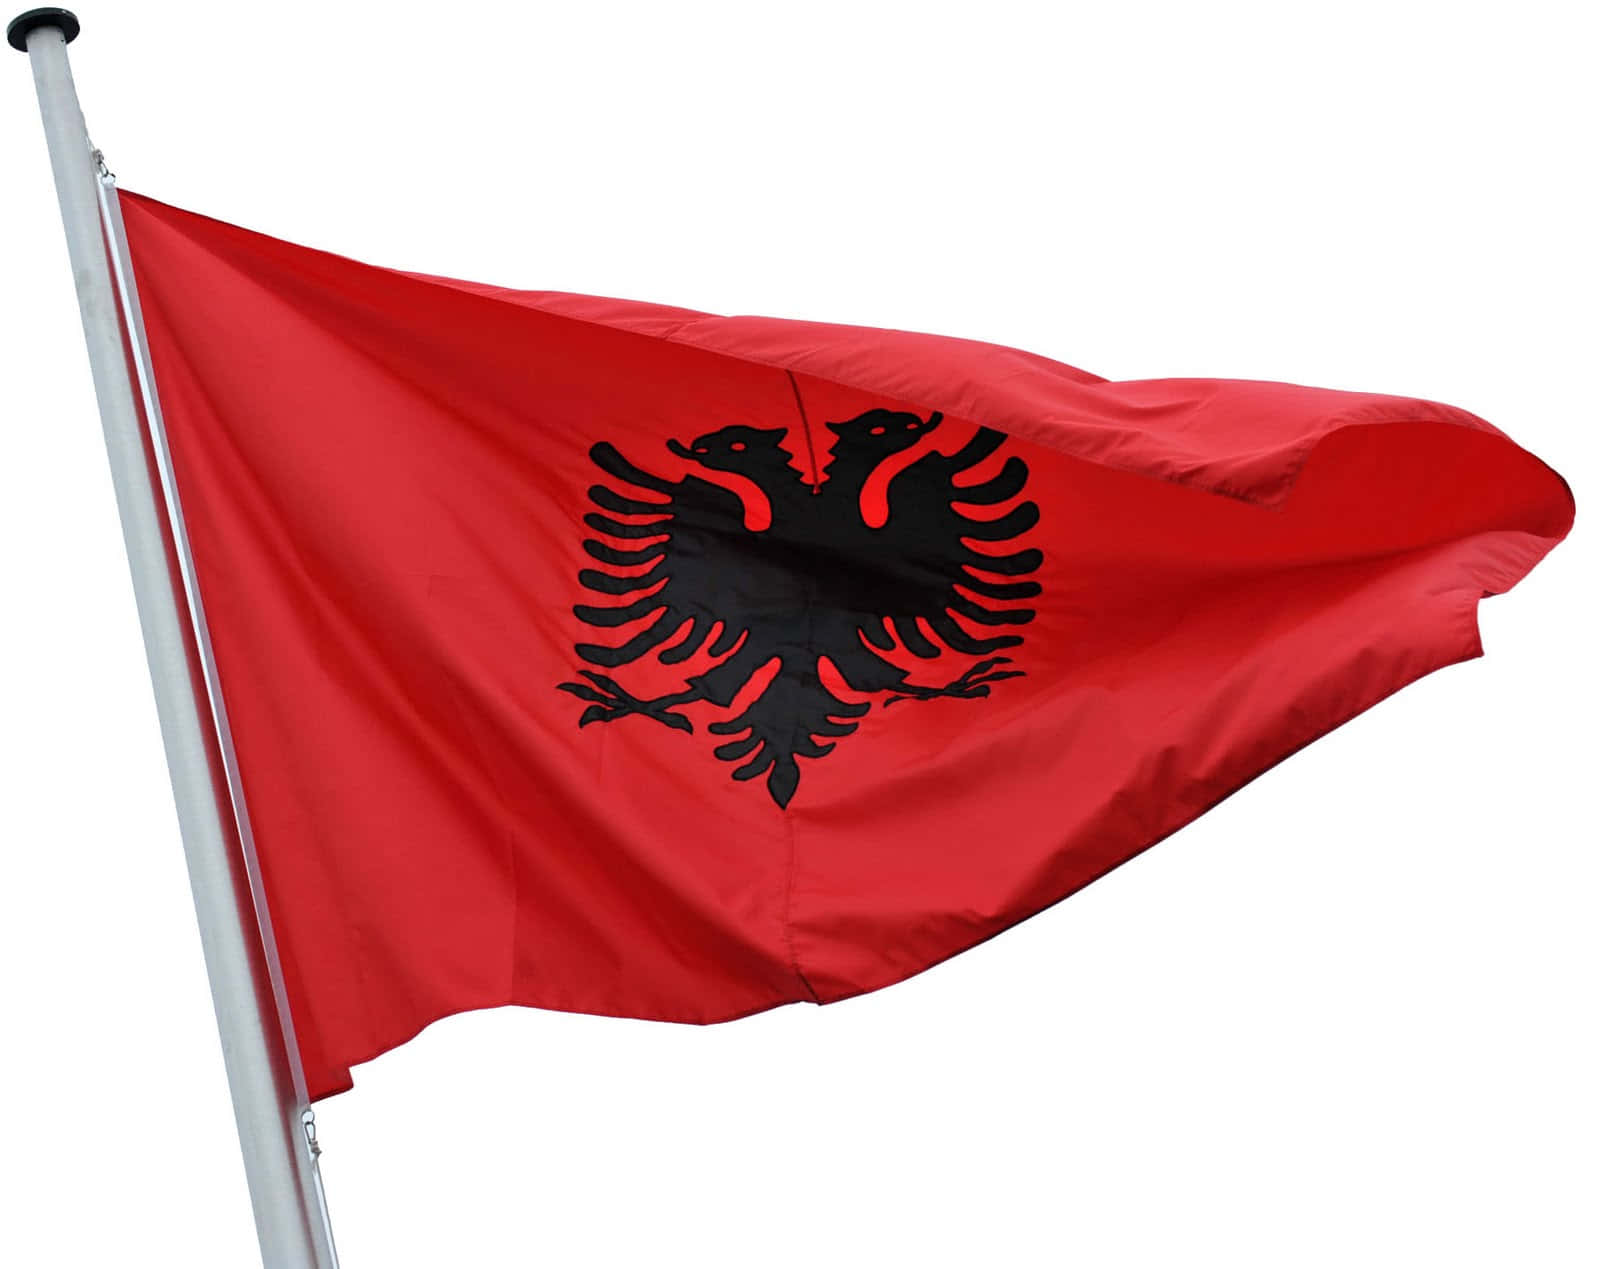 Albanskaflaggan - Xl